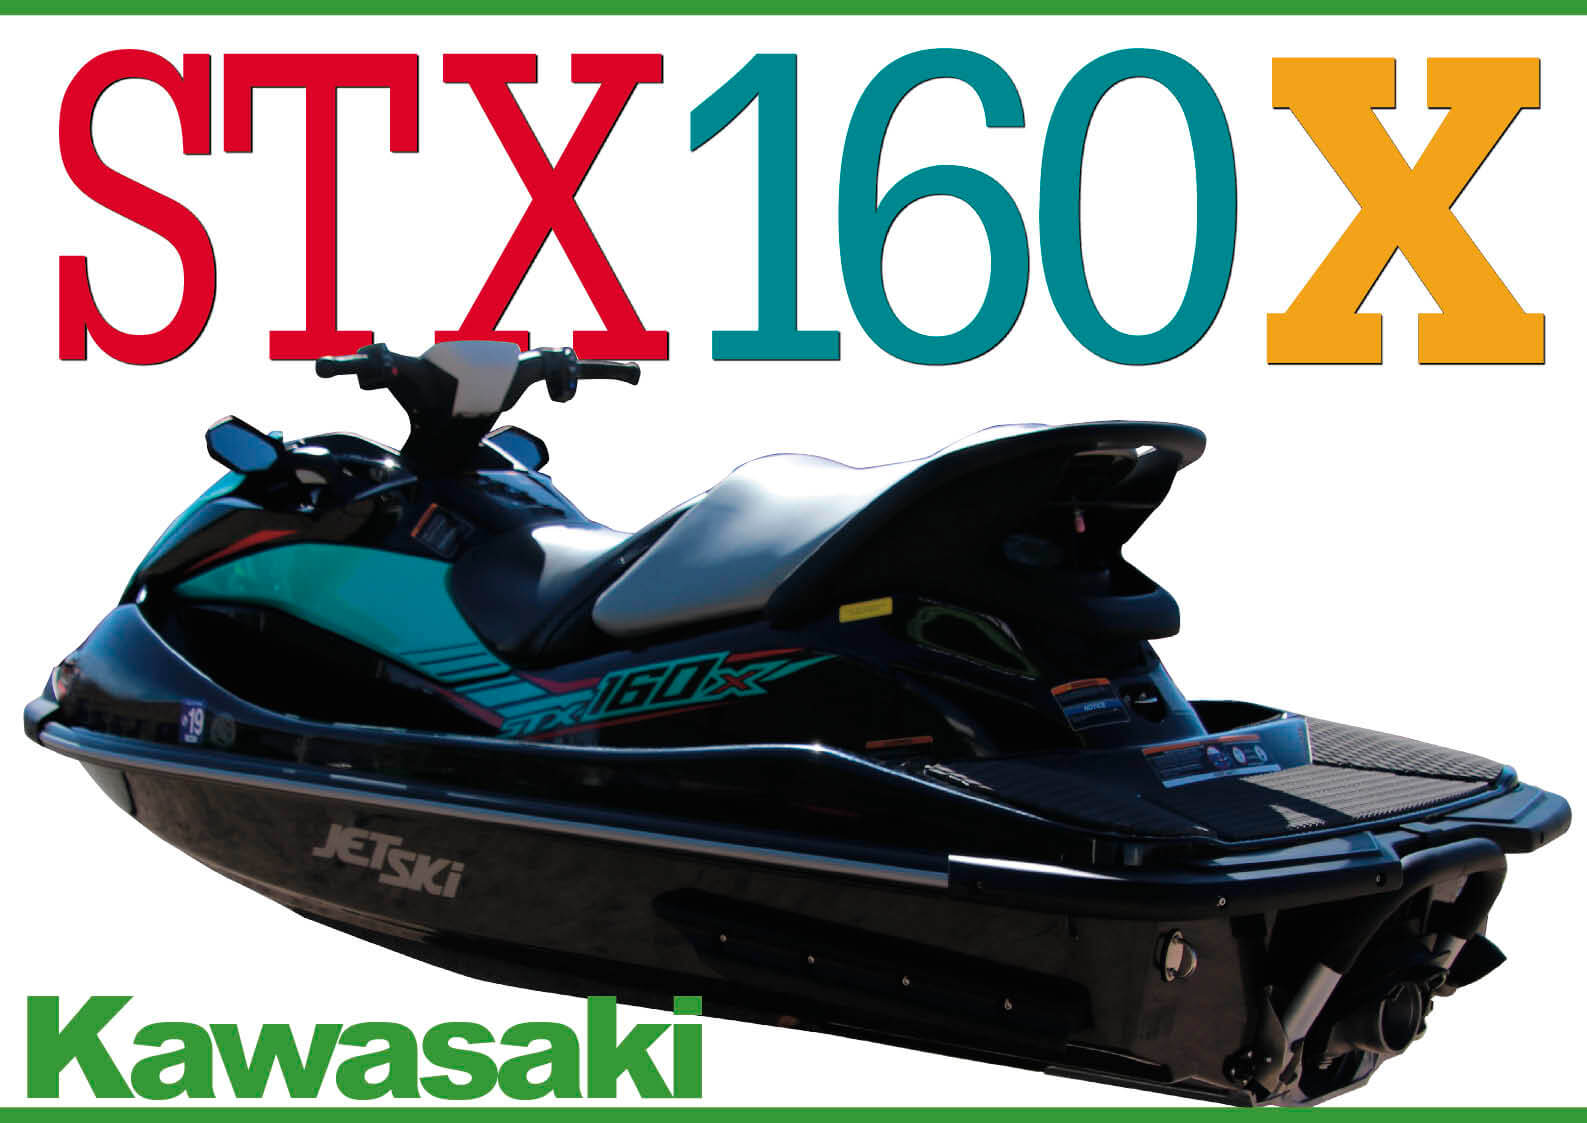 カワサキ ジェットスキー2020年モデル「STX 160」速報【動画付き】 (1 